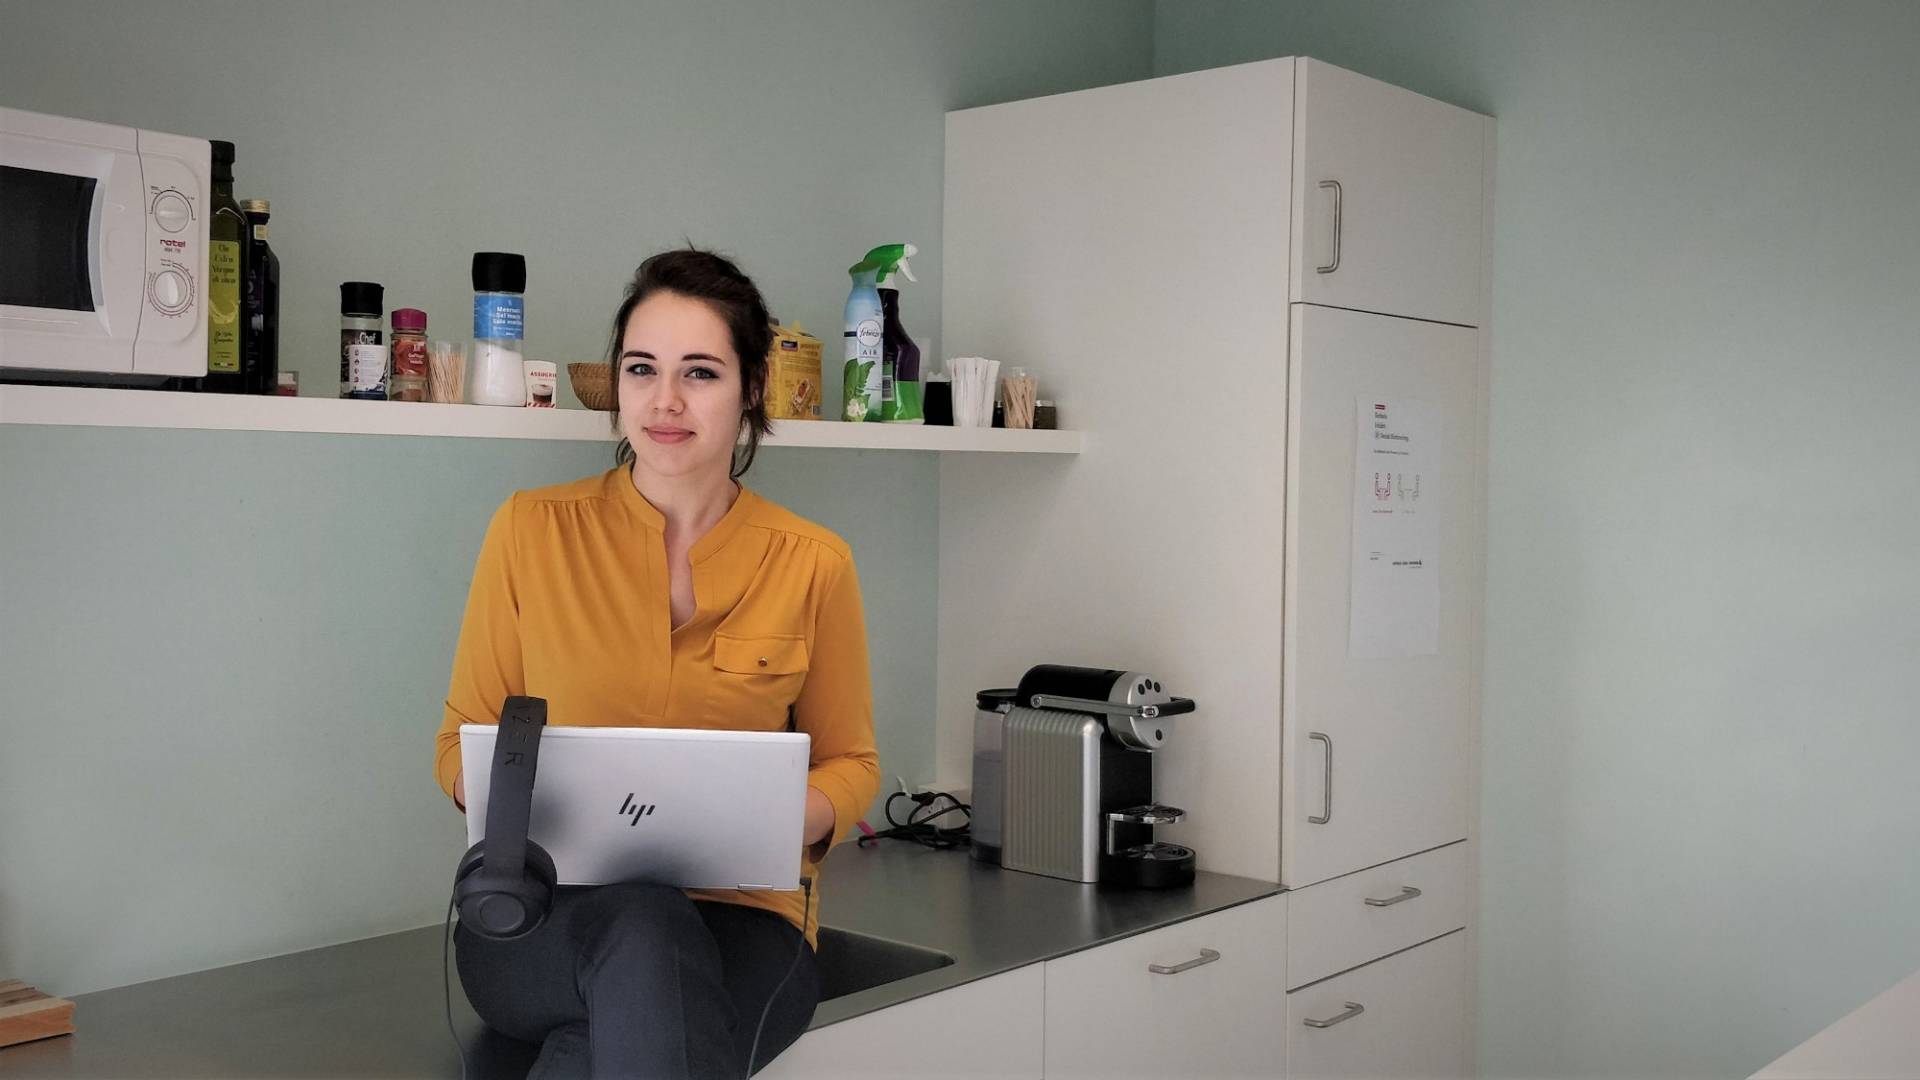 Caroline Stalder est assise dans la cuisine devant son ordinateur portable.